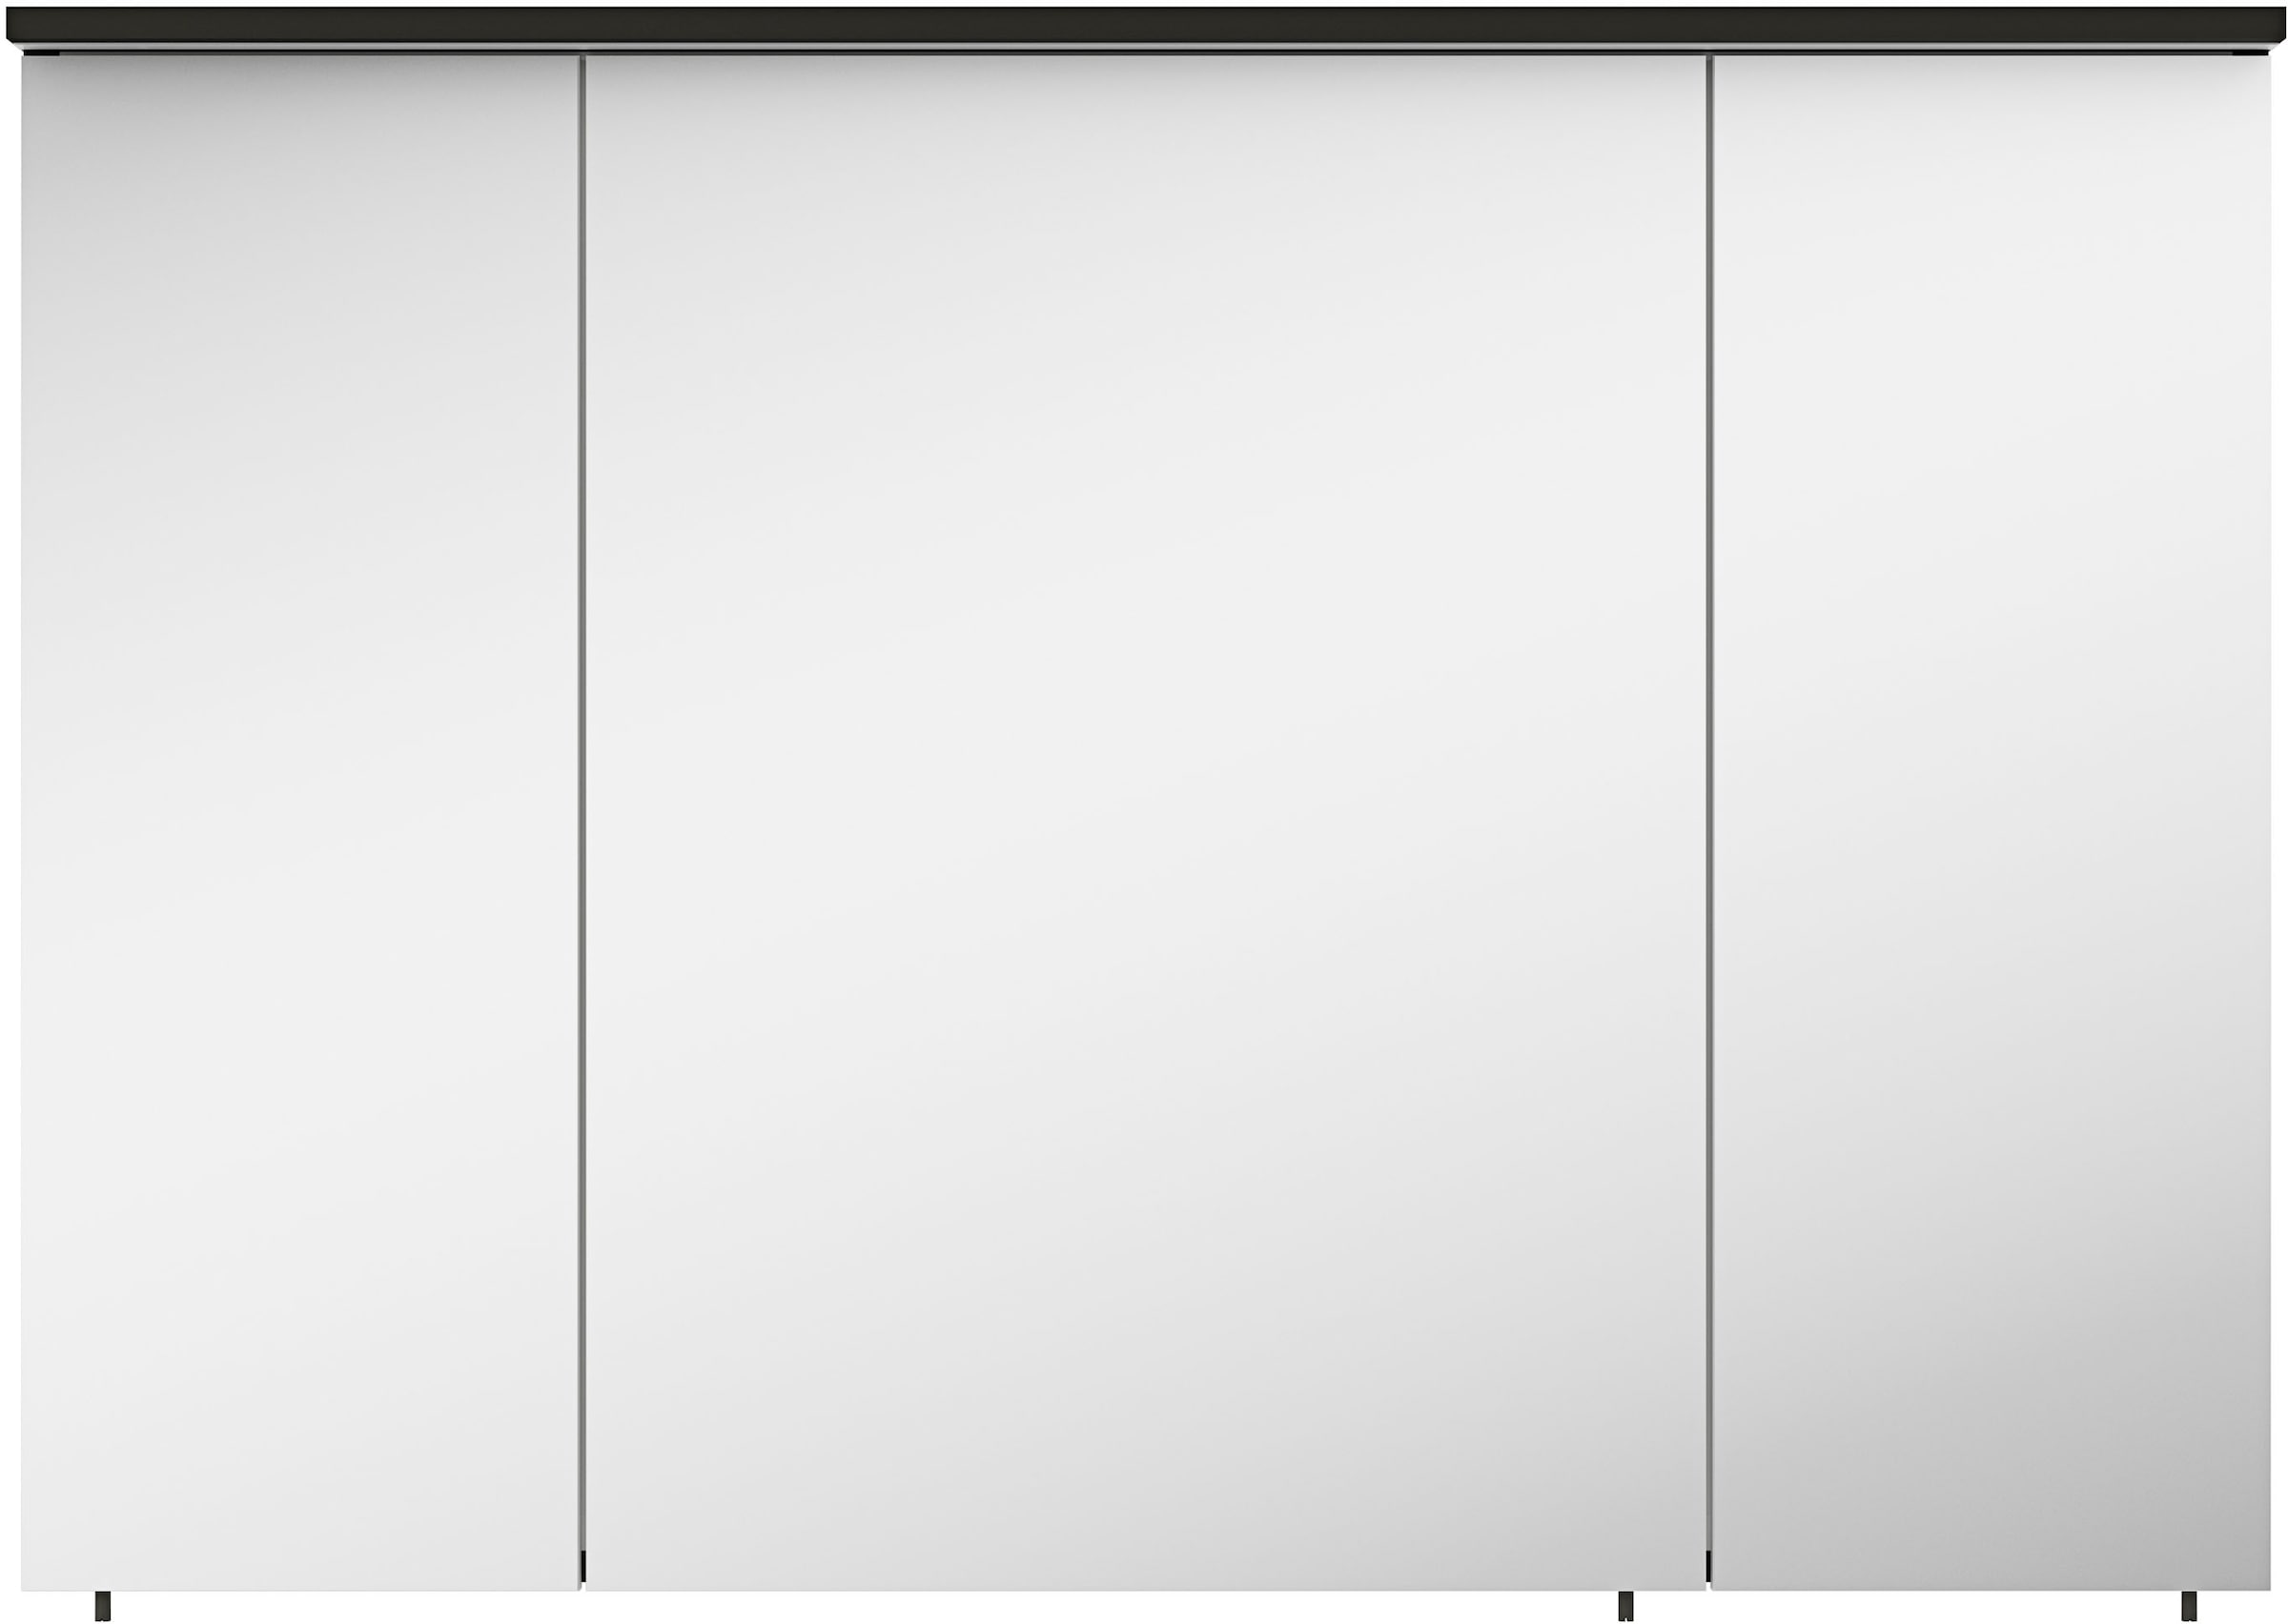 MARLIN Spiegelschrank "3510clarus", 100 cm breit, Soft-Close-Funktion, inkl. Beleuchtung, vormontiert